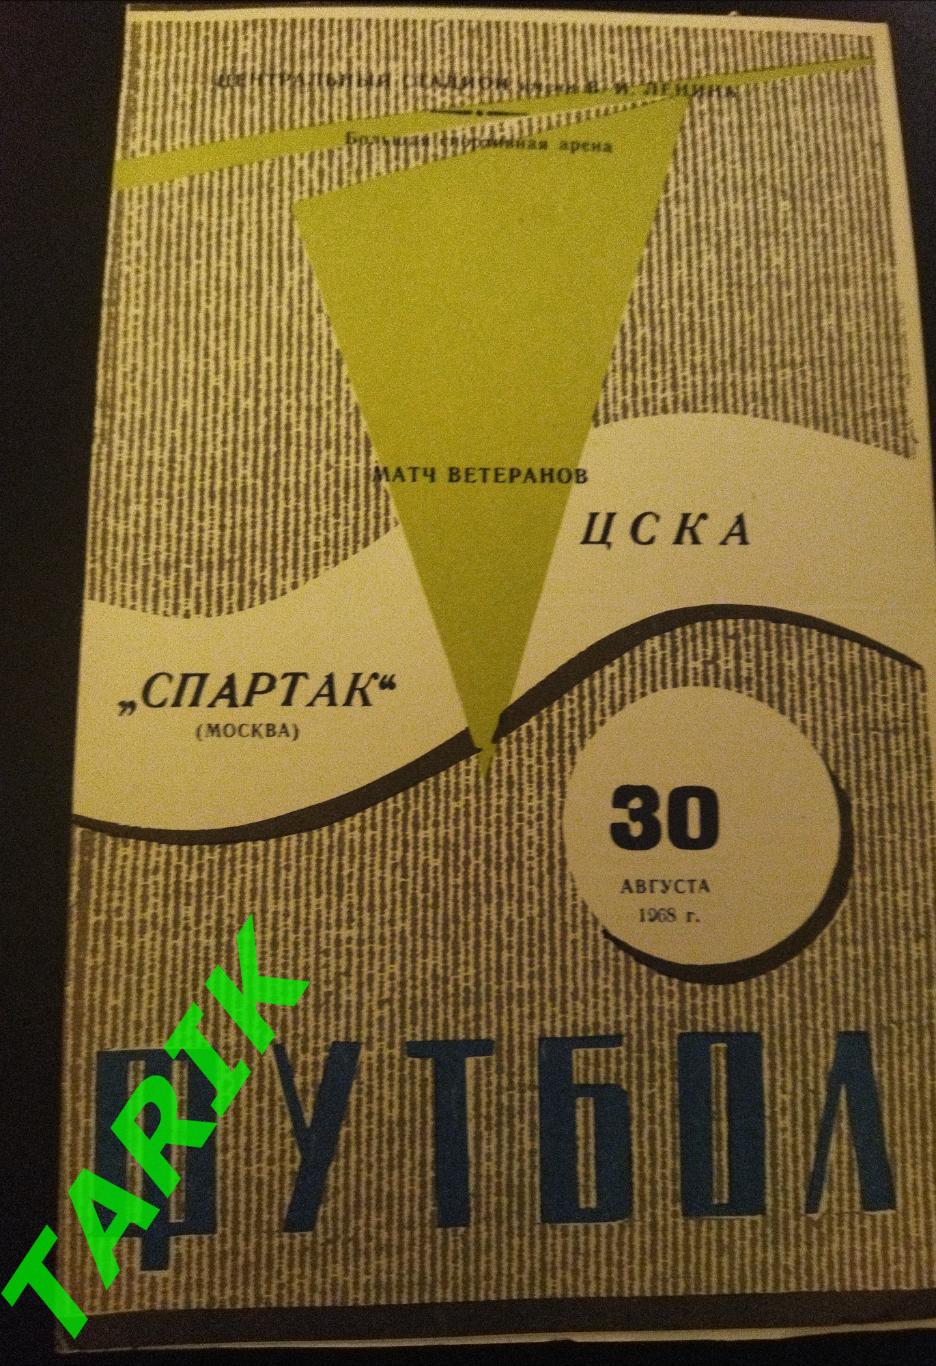 ЦСКА - Спартак Москва 30.08.1968 матч ветеранов